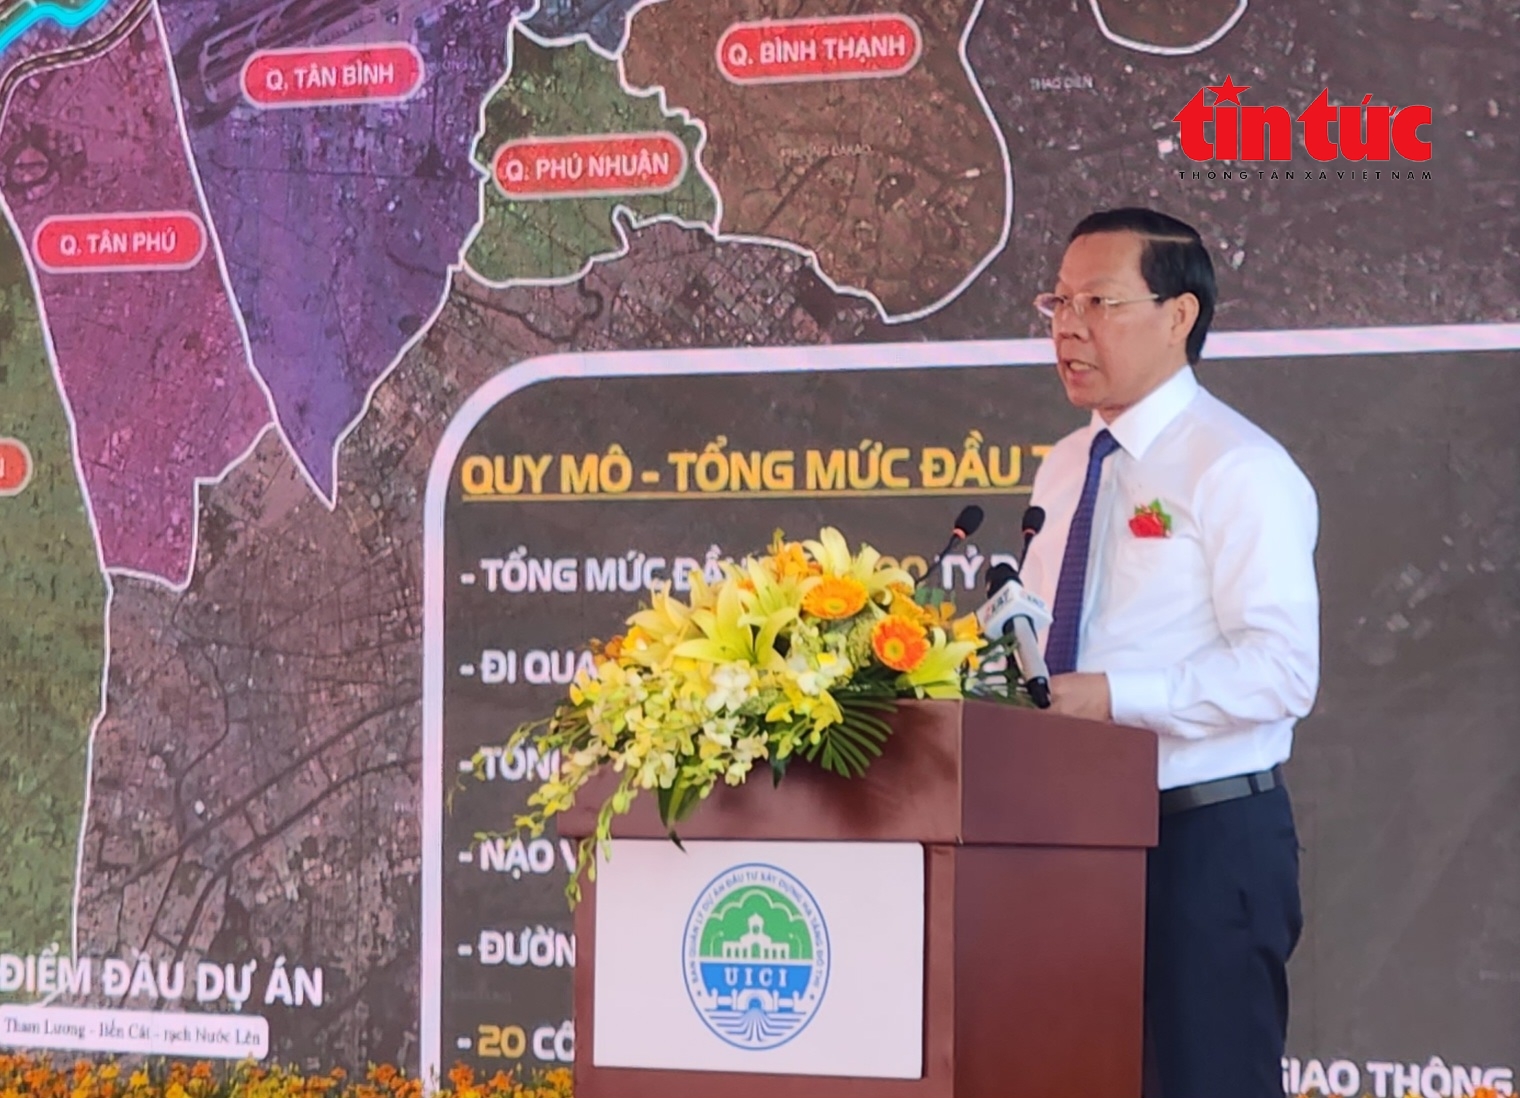 ông Phan Văn Mãi, gửi lời cảm ơn người dân đã ủng hộ bàn giao mặt bằng cho dự án